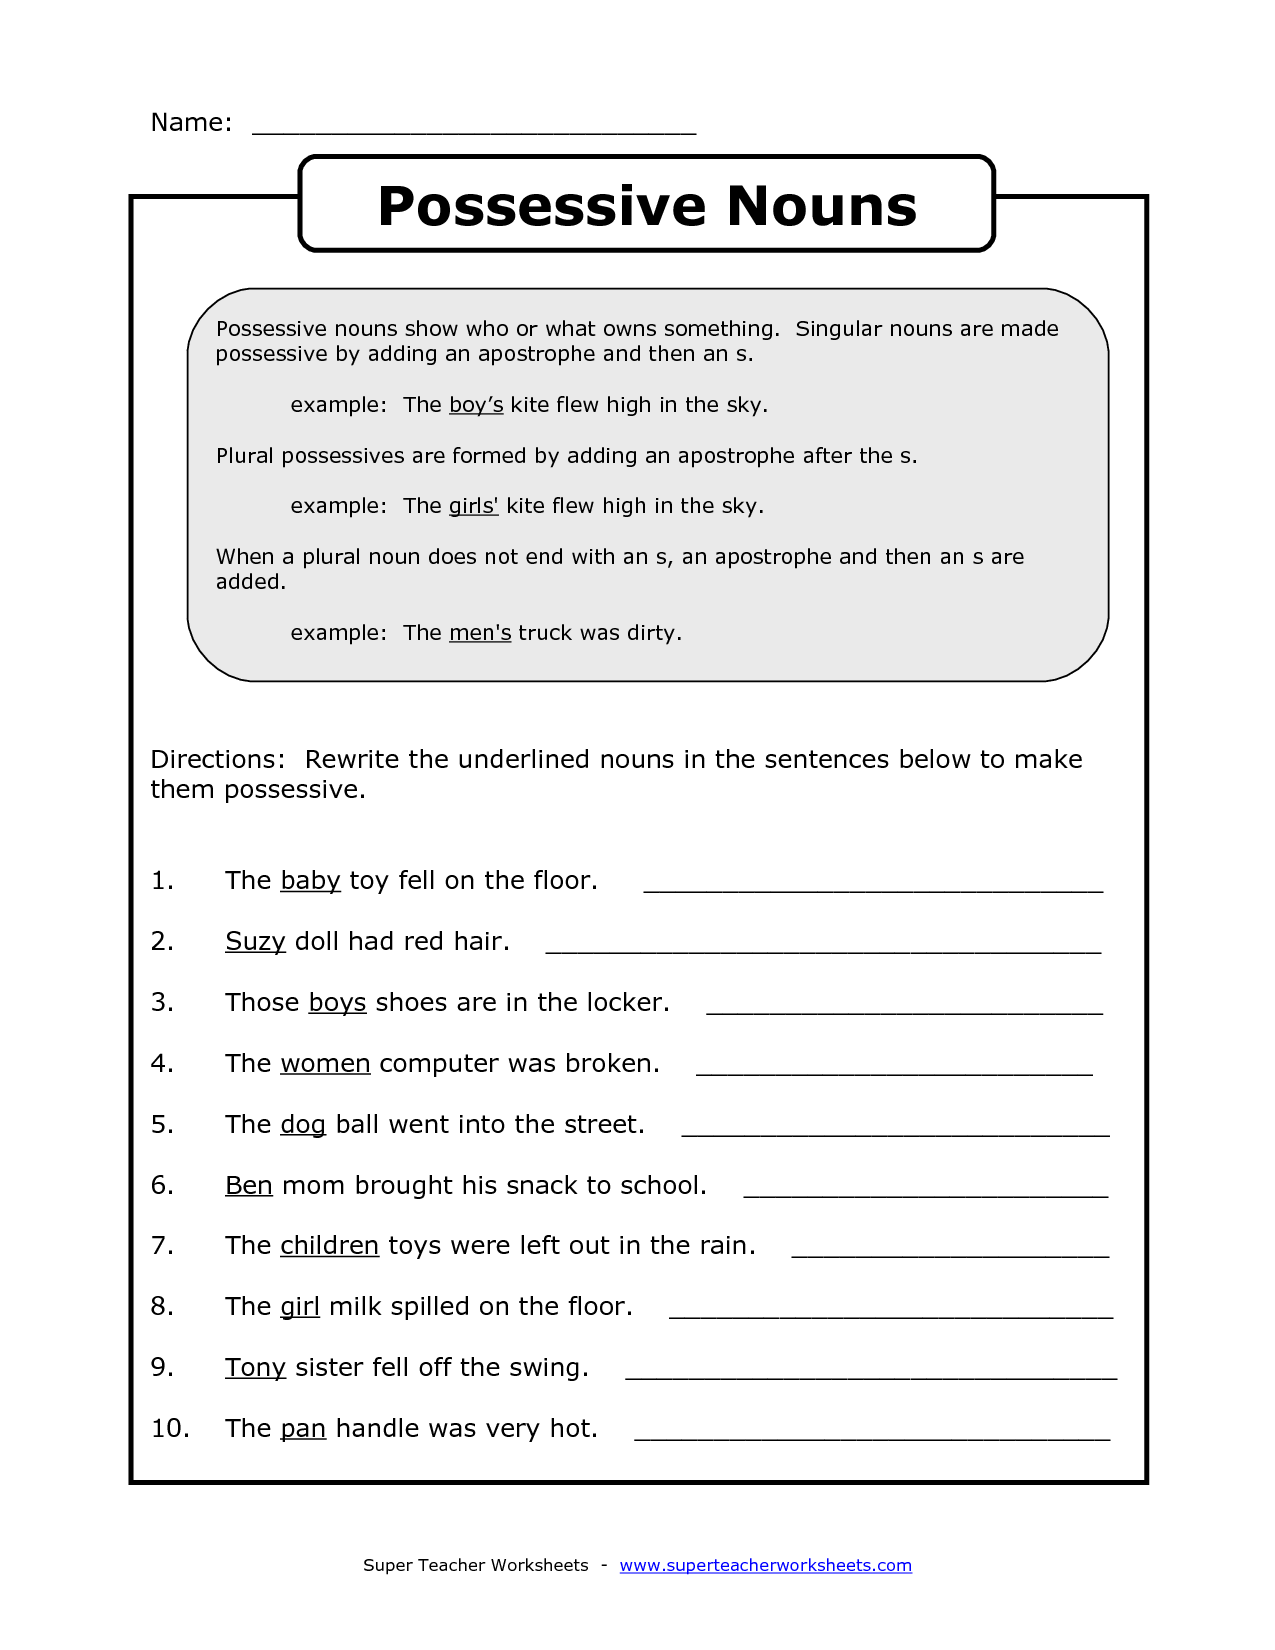 search-results-for-possessive-nouns-2nd-grade-calendar-2015